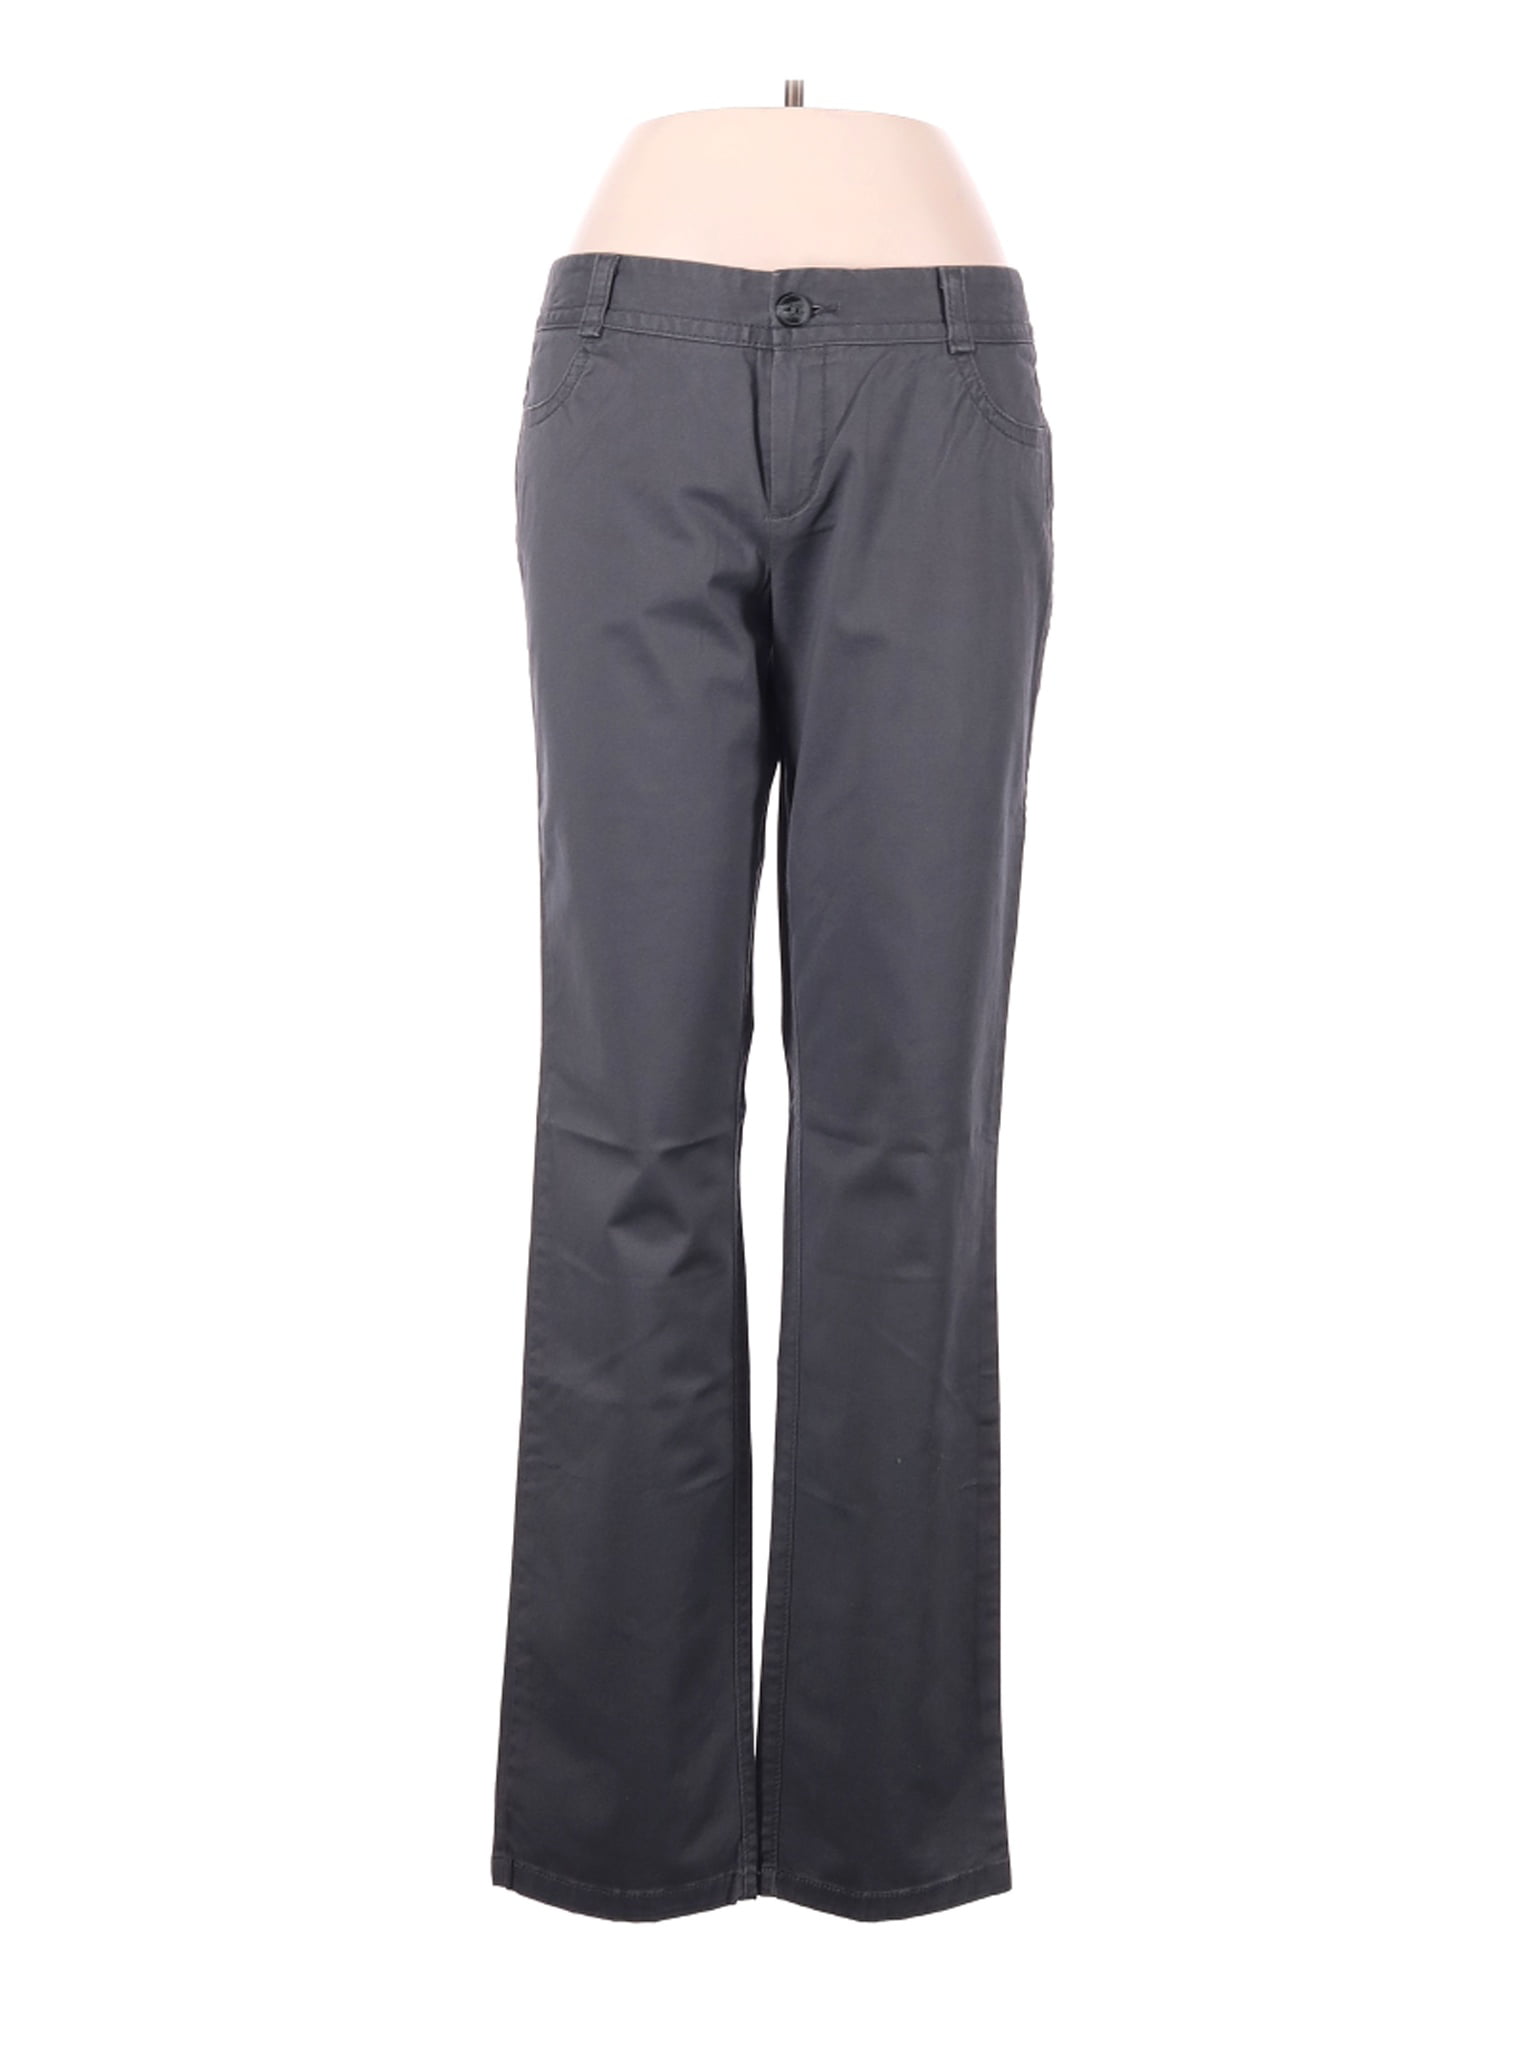 Dockers - Pre-Owned Dockers Women's Size 8 Casual Pants - Walmart.com ...